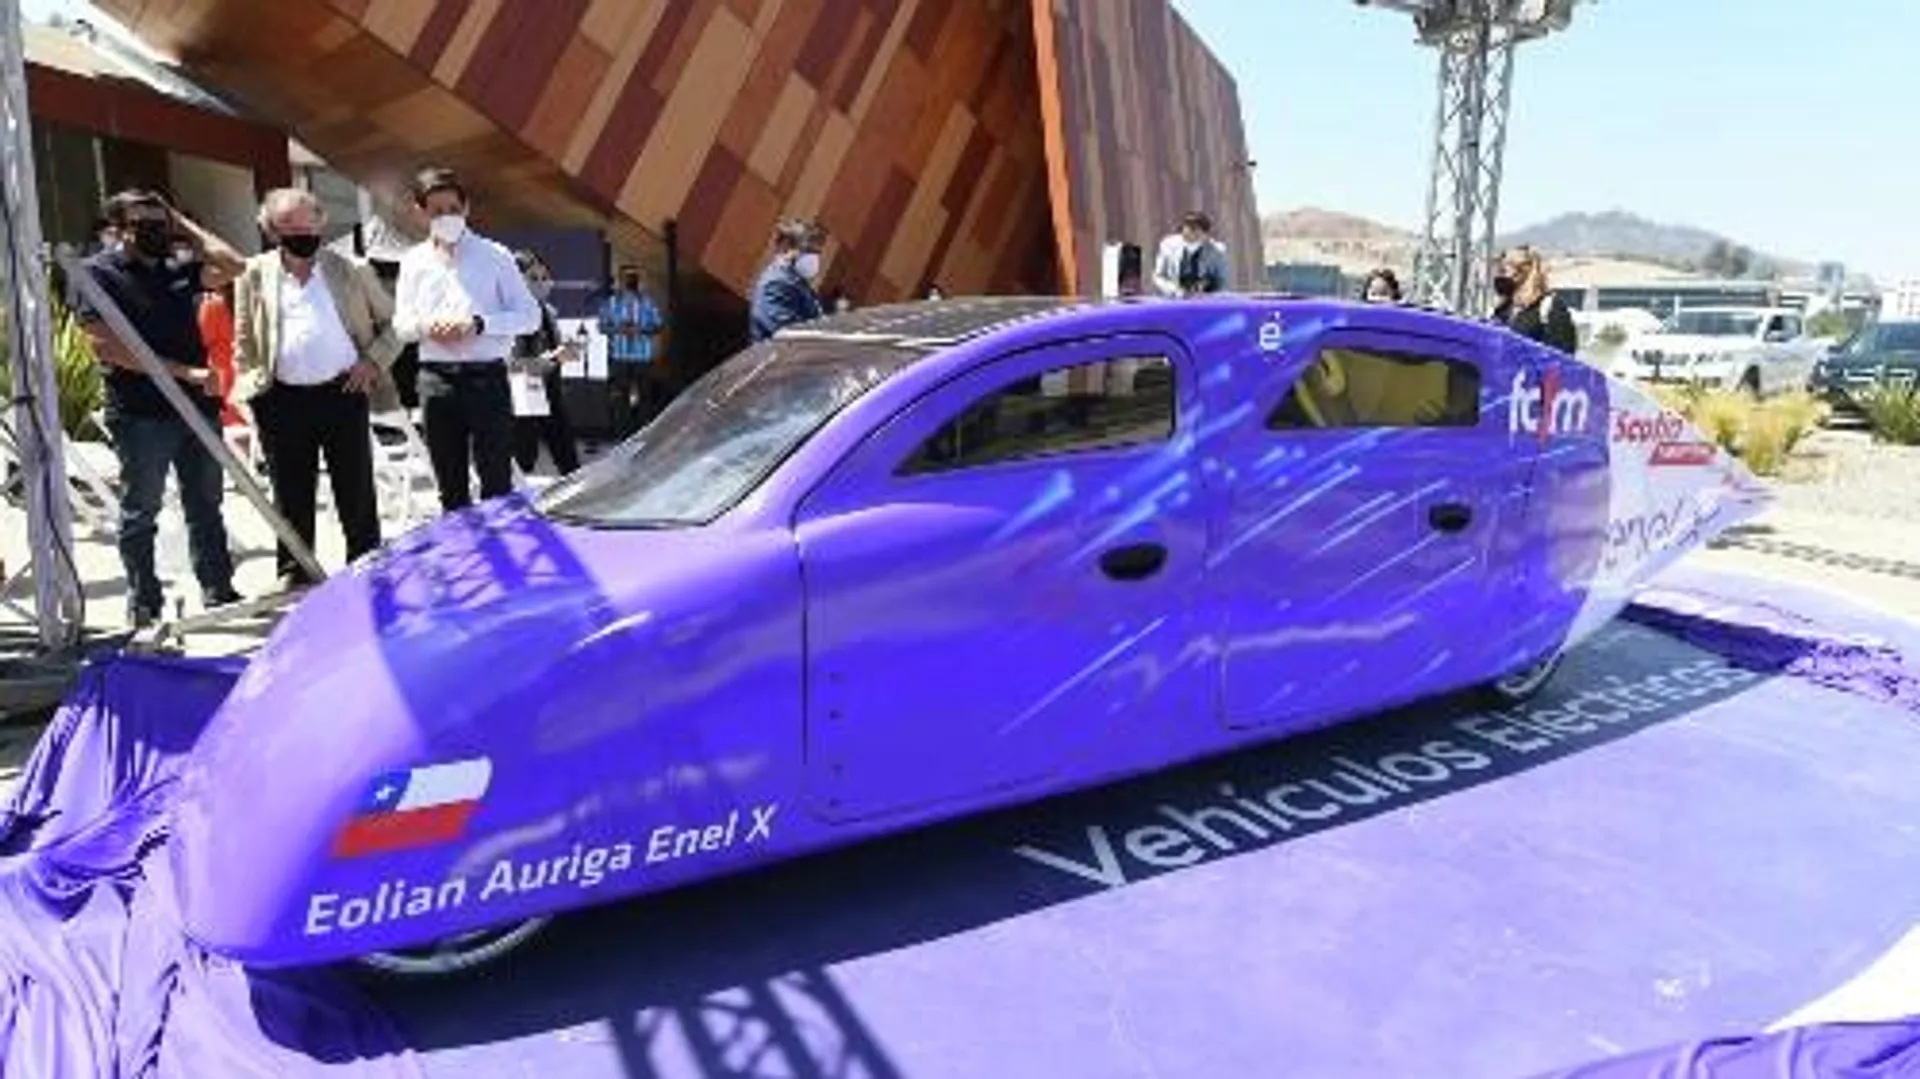  Eolian Áuriga: el auto eléctrico chileno alimentado a energía solar y que alcanza los 100 km/h